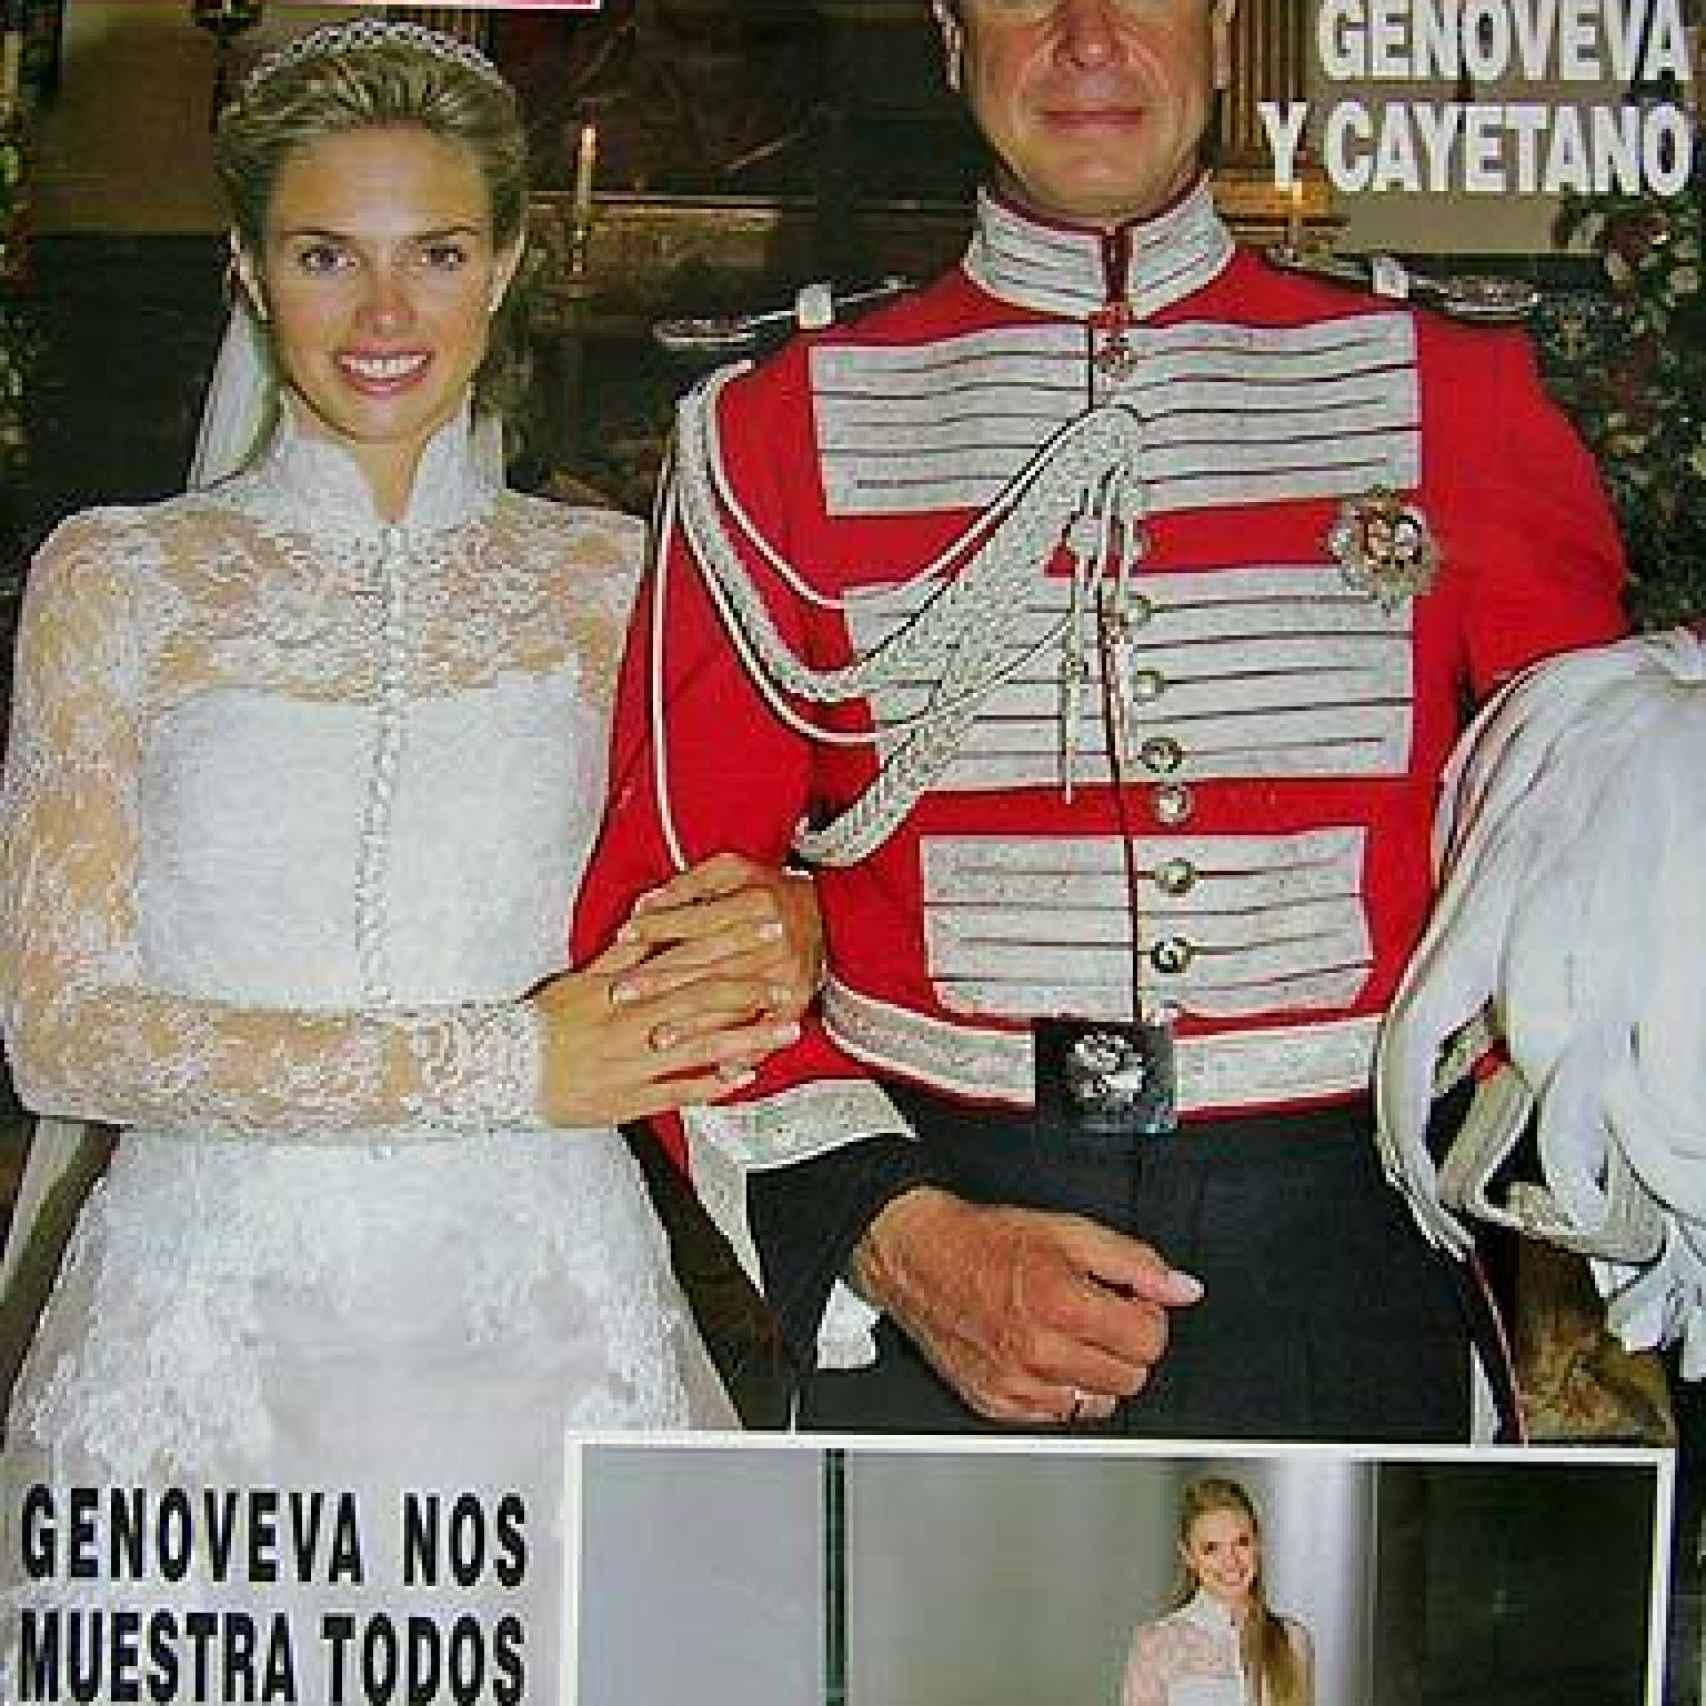 Genoveva y Cayetano se casaron el 15 de octubre de 2005 en el Palacio de las Dueñas